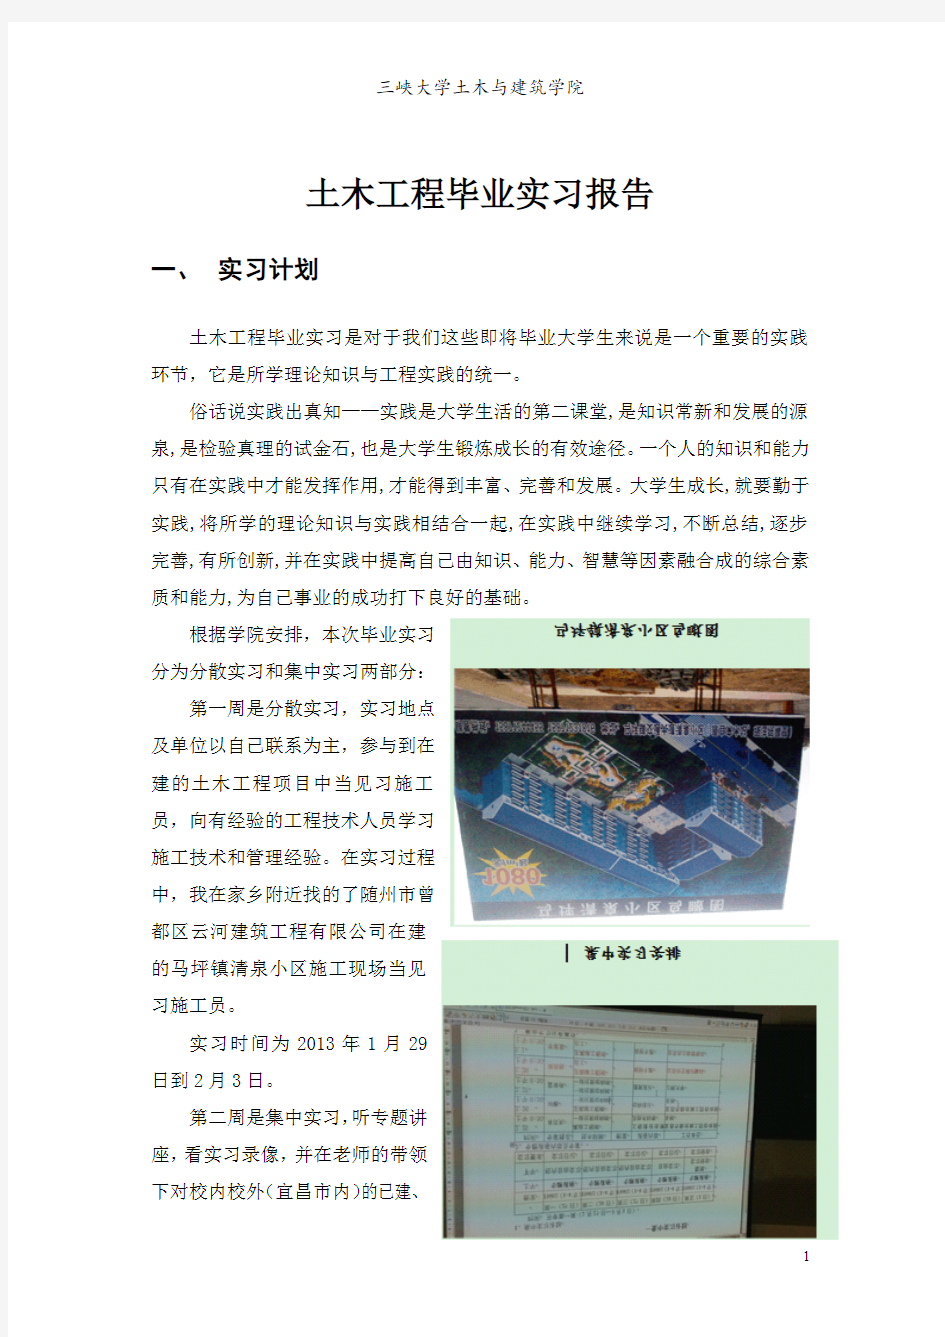 土木工程毕业实习报告(三峡大学)